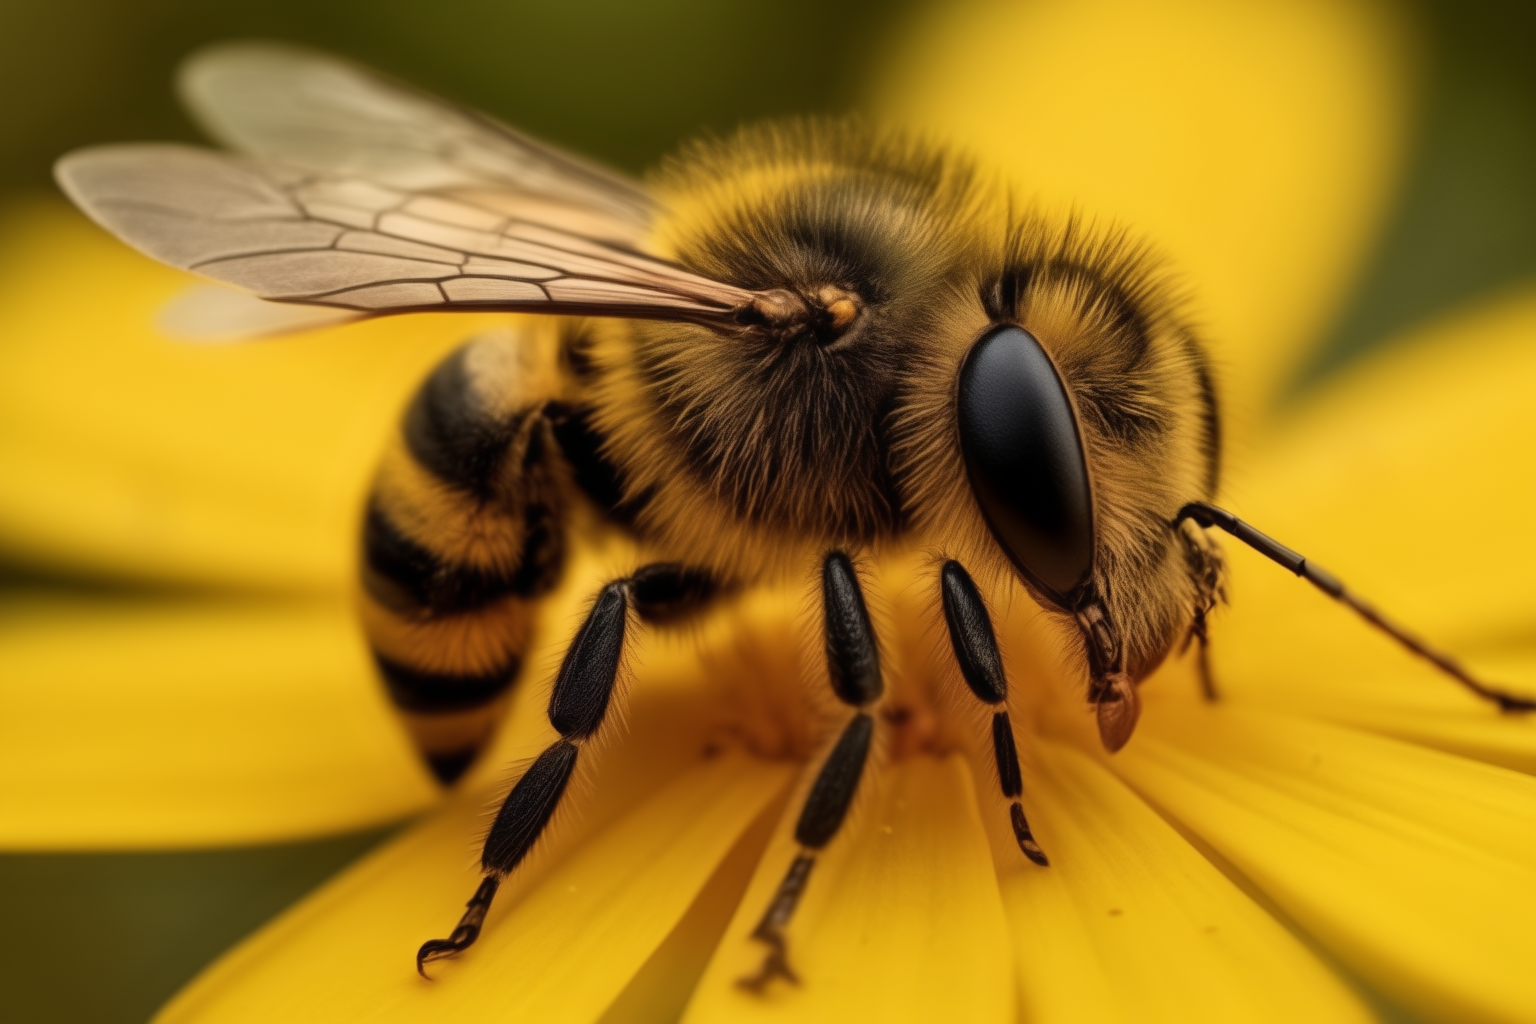 Пчела ужалила мужчину прямо в зрачок: редкий и опасный случай в медицине